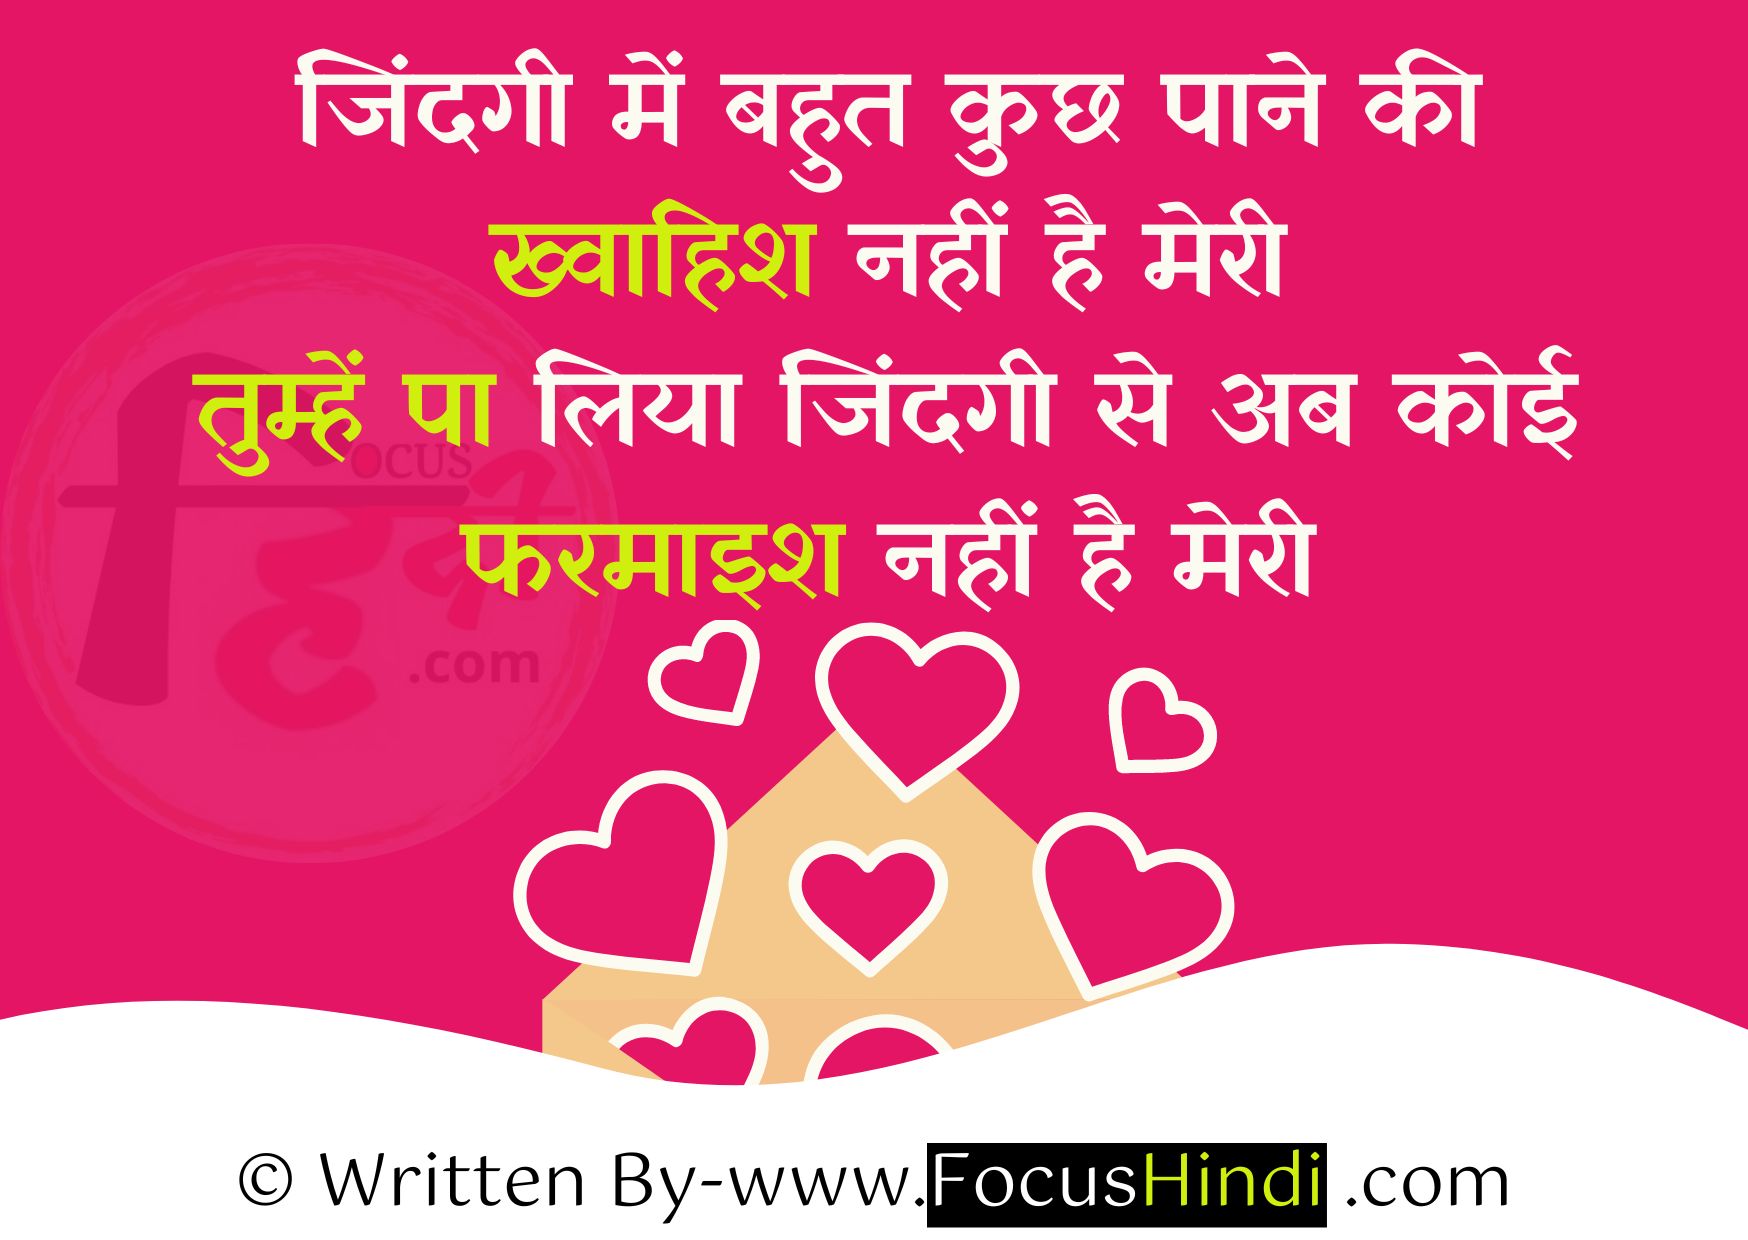 Pati patni shayari status quotes in Hindi